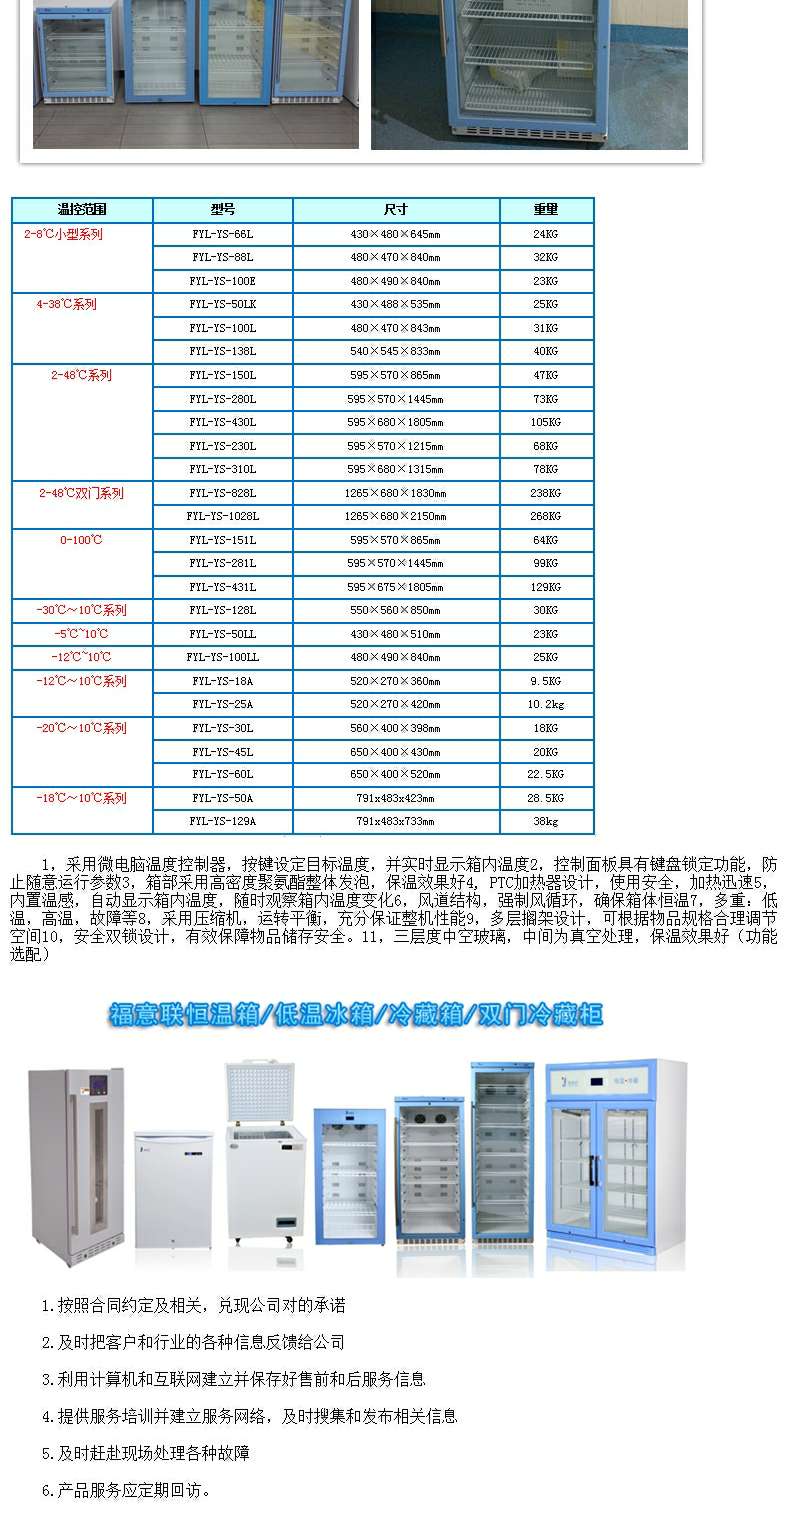 冰箱容量:三400L;电源:220V,50Hz国产。温度:0-20度(药品冷藏)